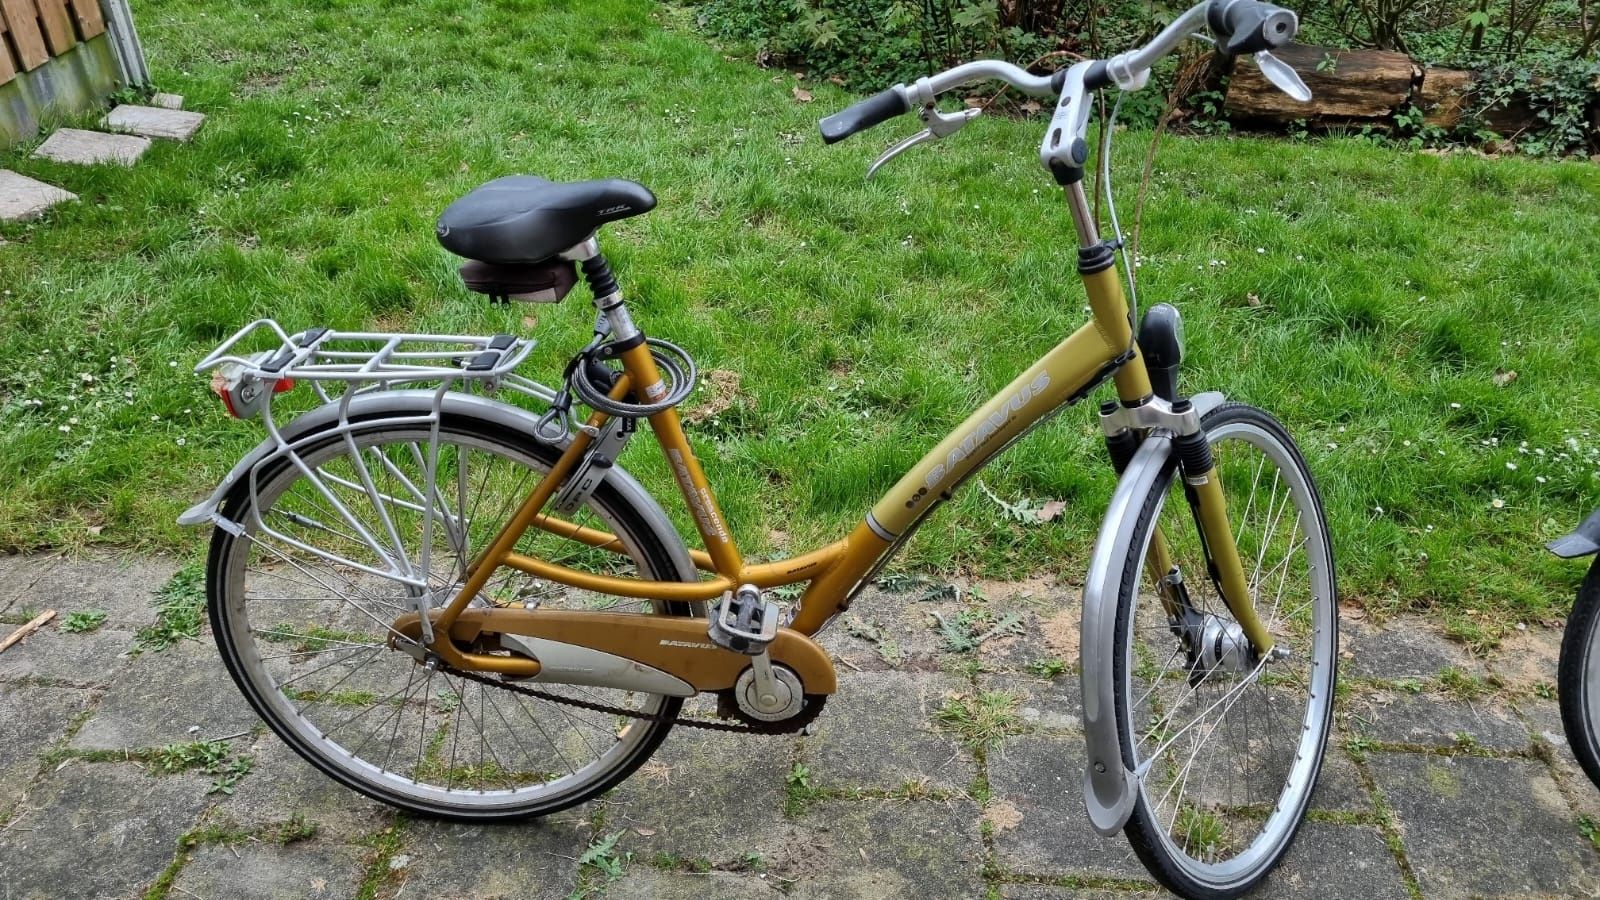 Sprzedam damkę Batavus-możliwy transport roweru